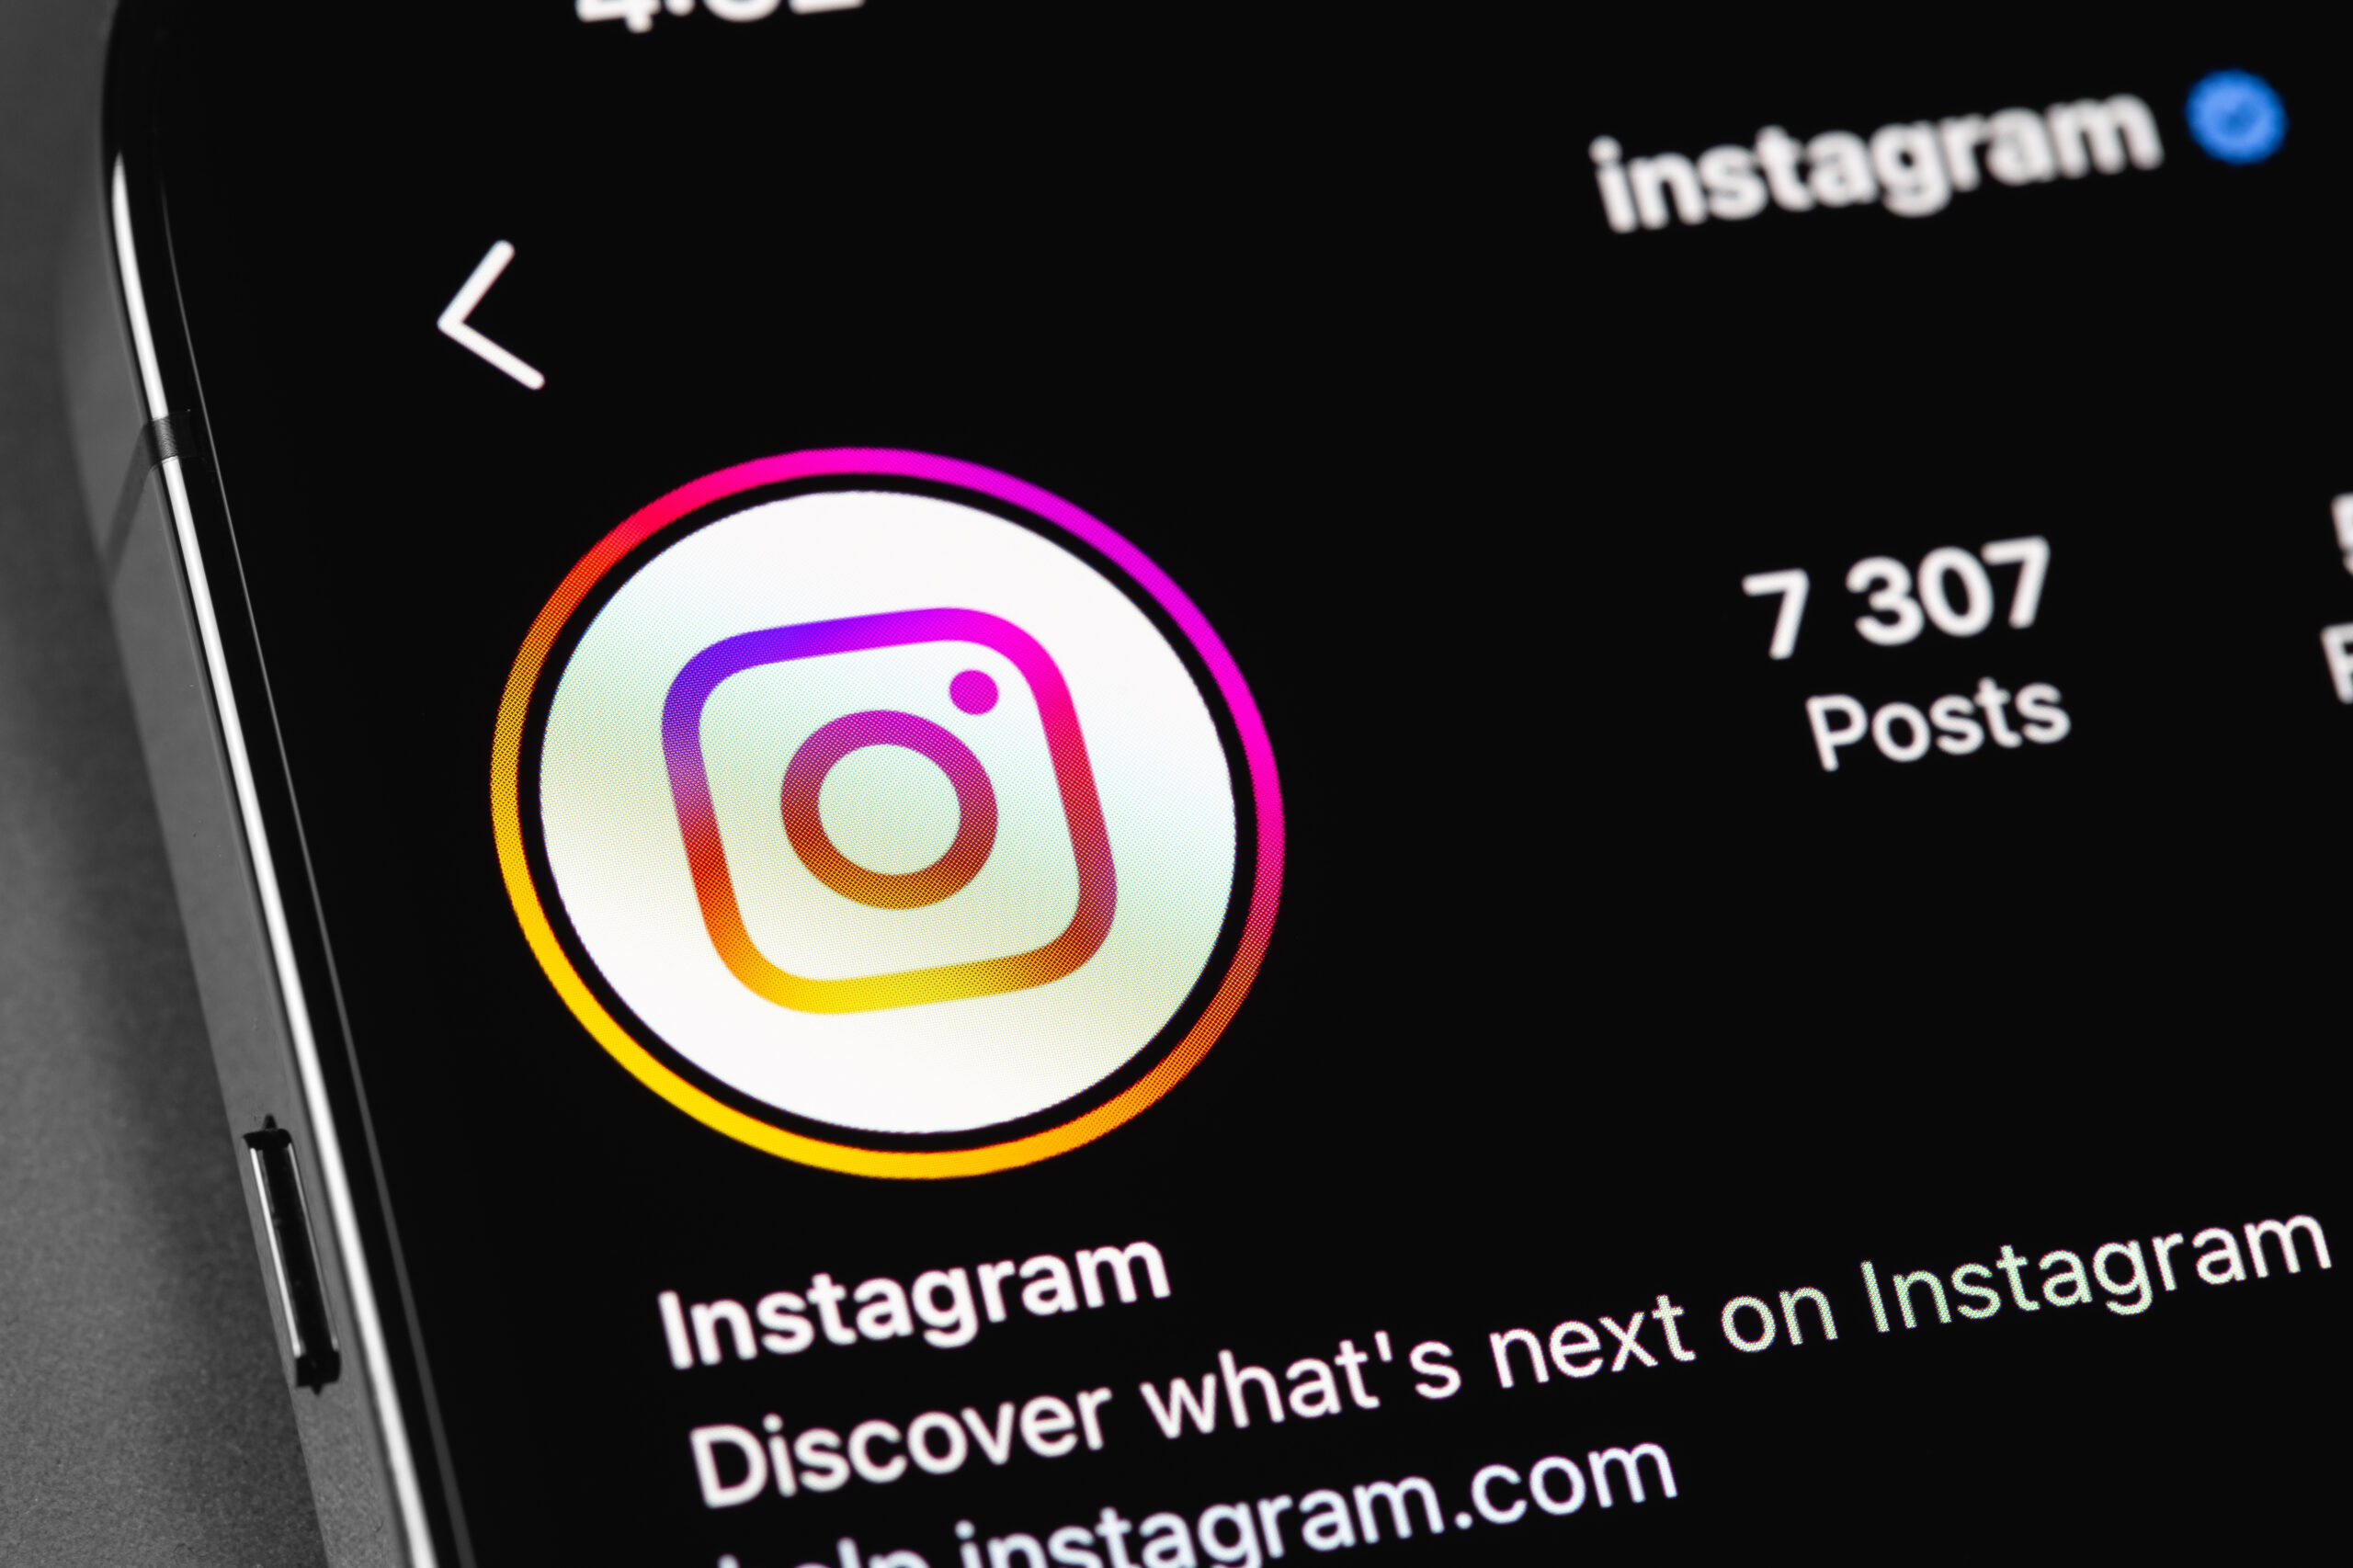 Aprenda a publicar um gif direto nos Stories do Instagram